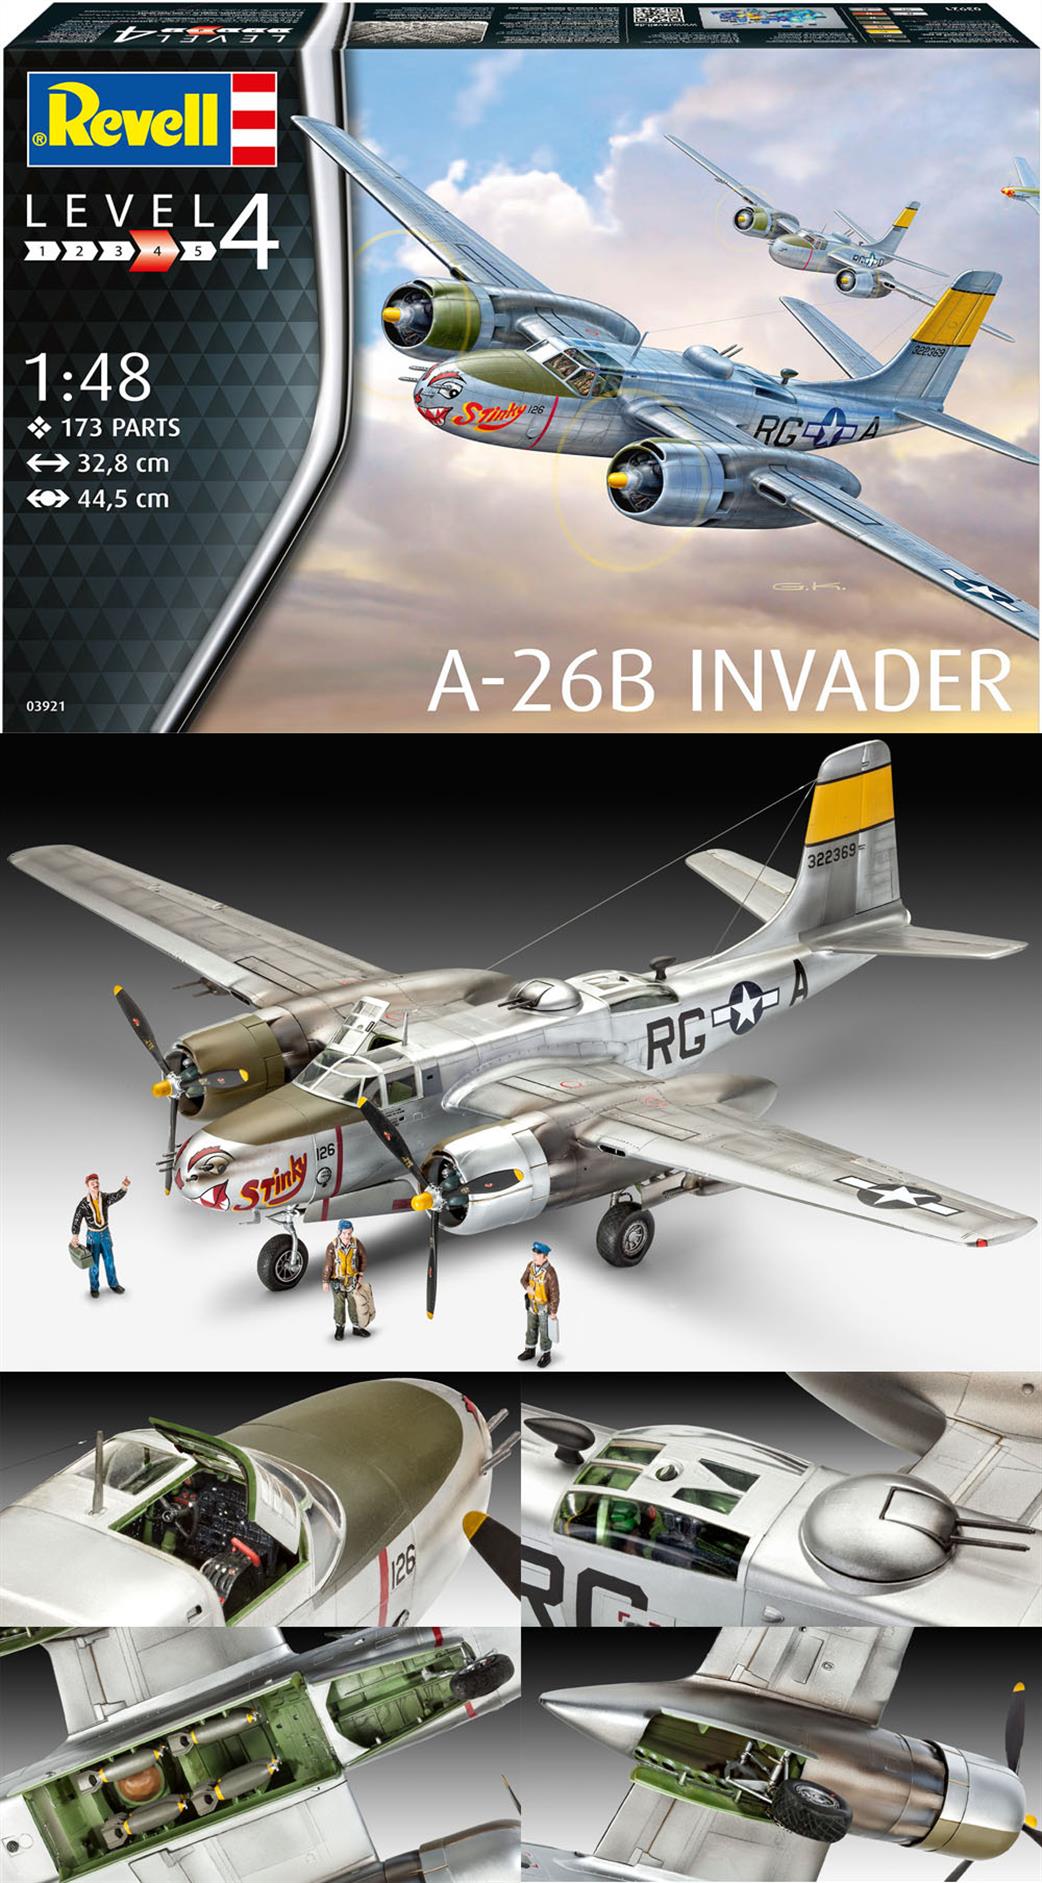 Revell 1/48 03921 A-26B Invader WW2 Light Bomber Kit Kit